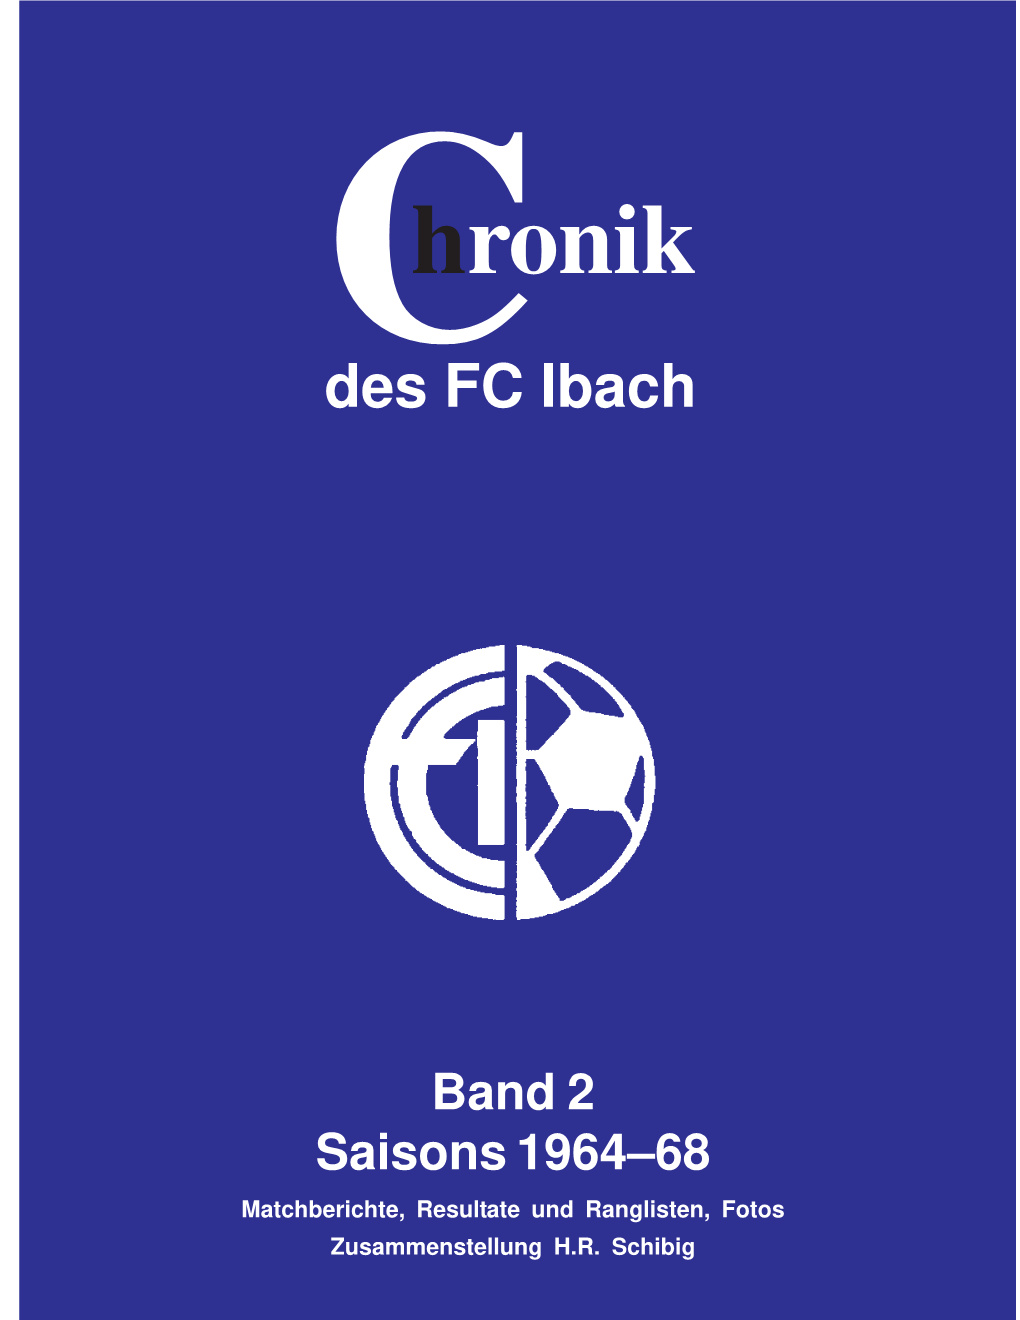 Chronik Saison 1964-68